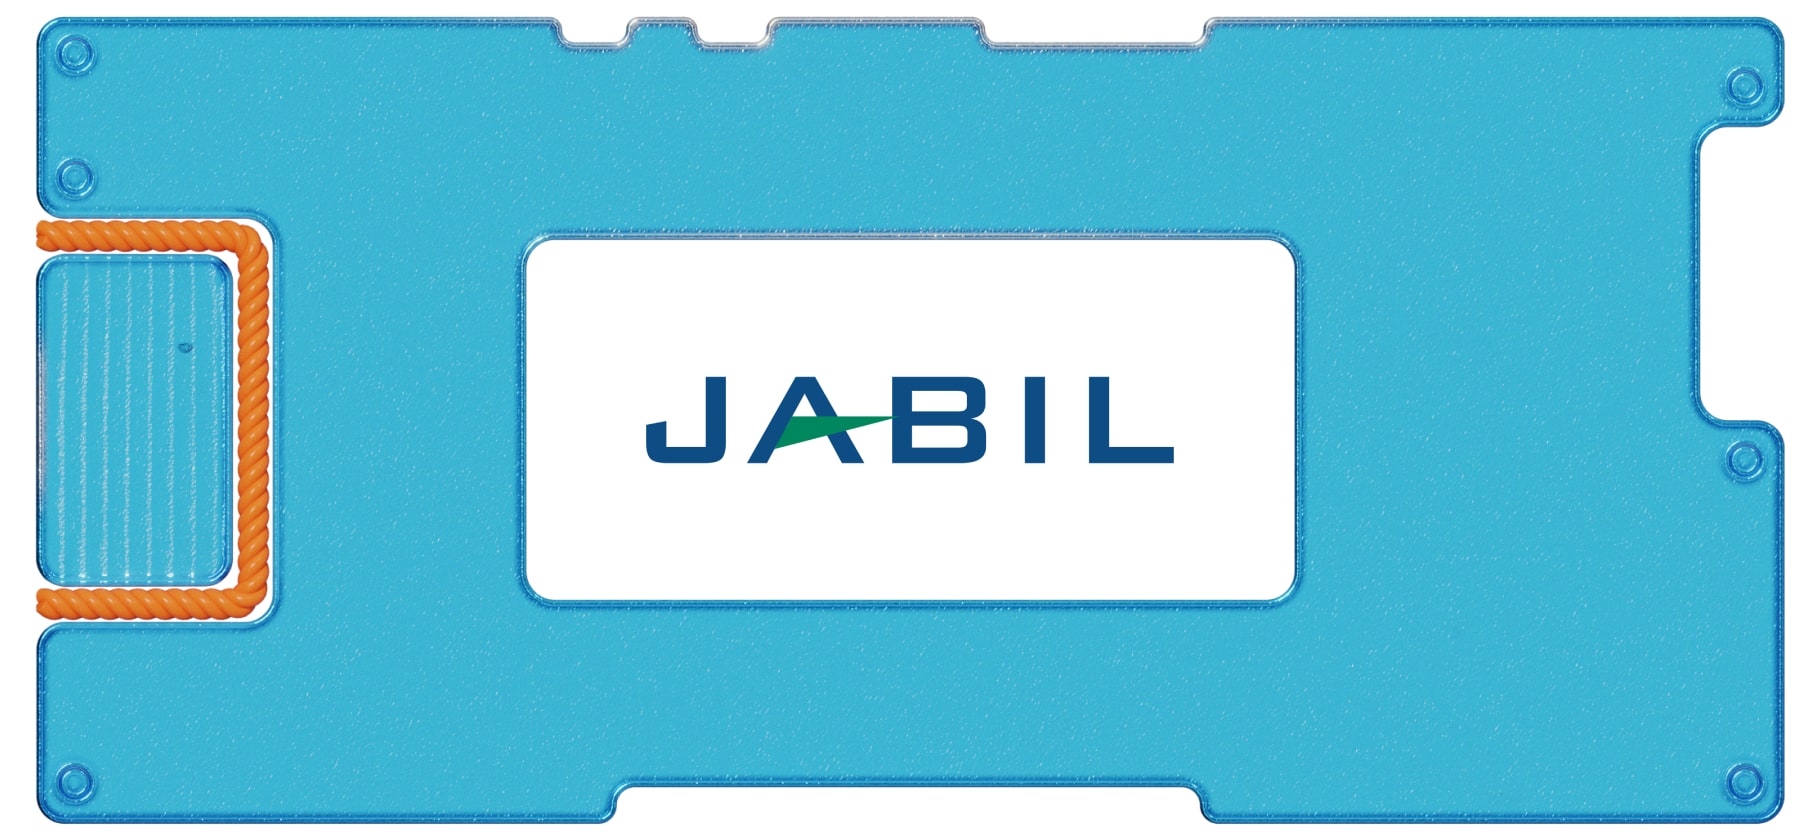 Инвестидея: Jabil, потому что Apple